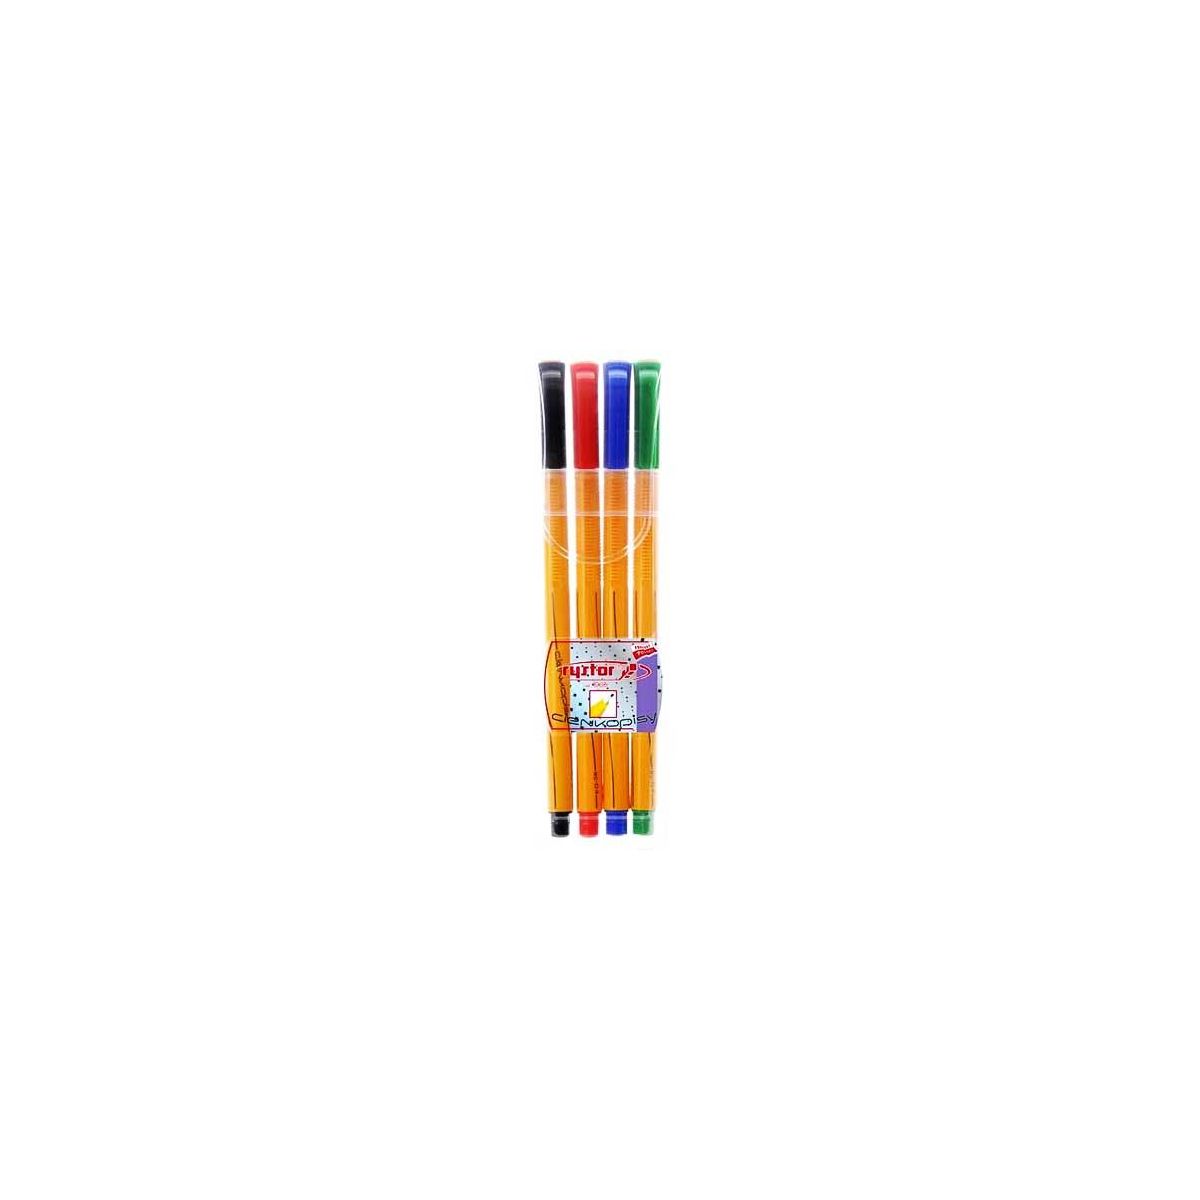 Cienkopis Rystor RC-04 4 kolory (403-012)